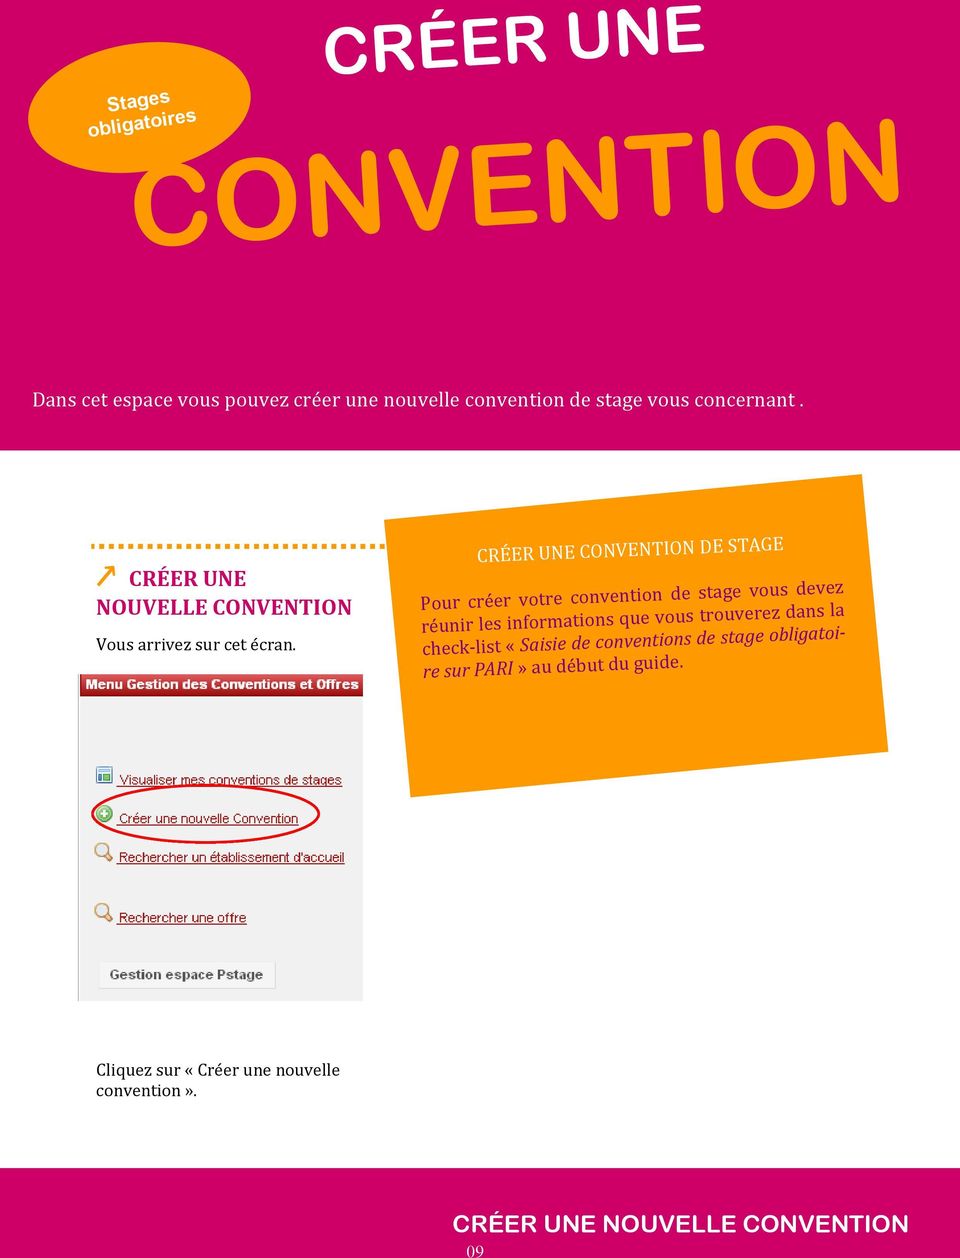 CRÉER UNE CONVENTION DE STAGE Pour créer votre convention de stage vous devez réunir les informations que vous